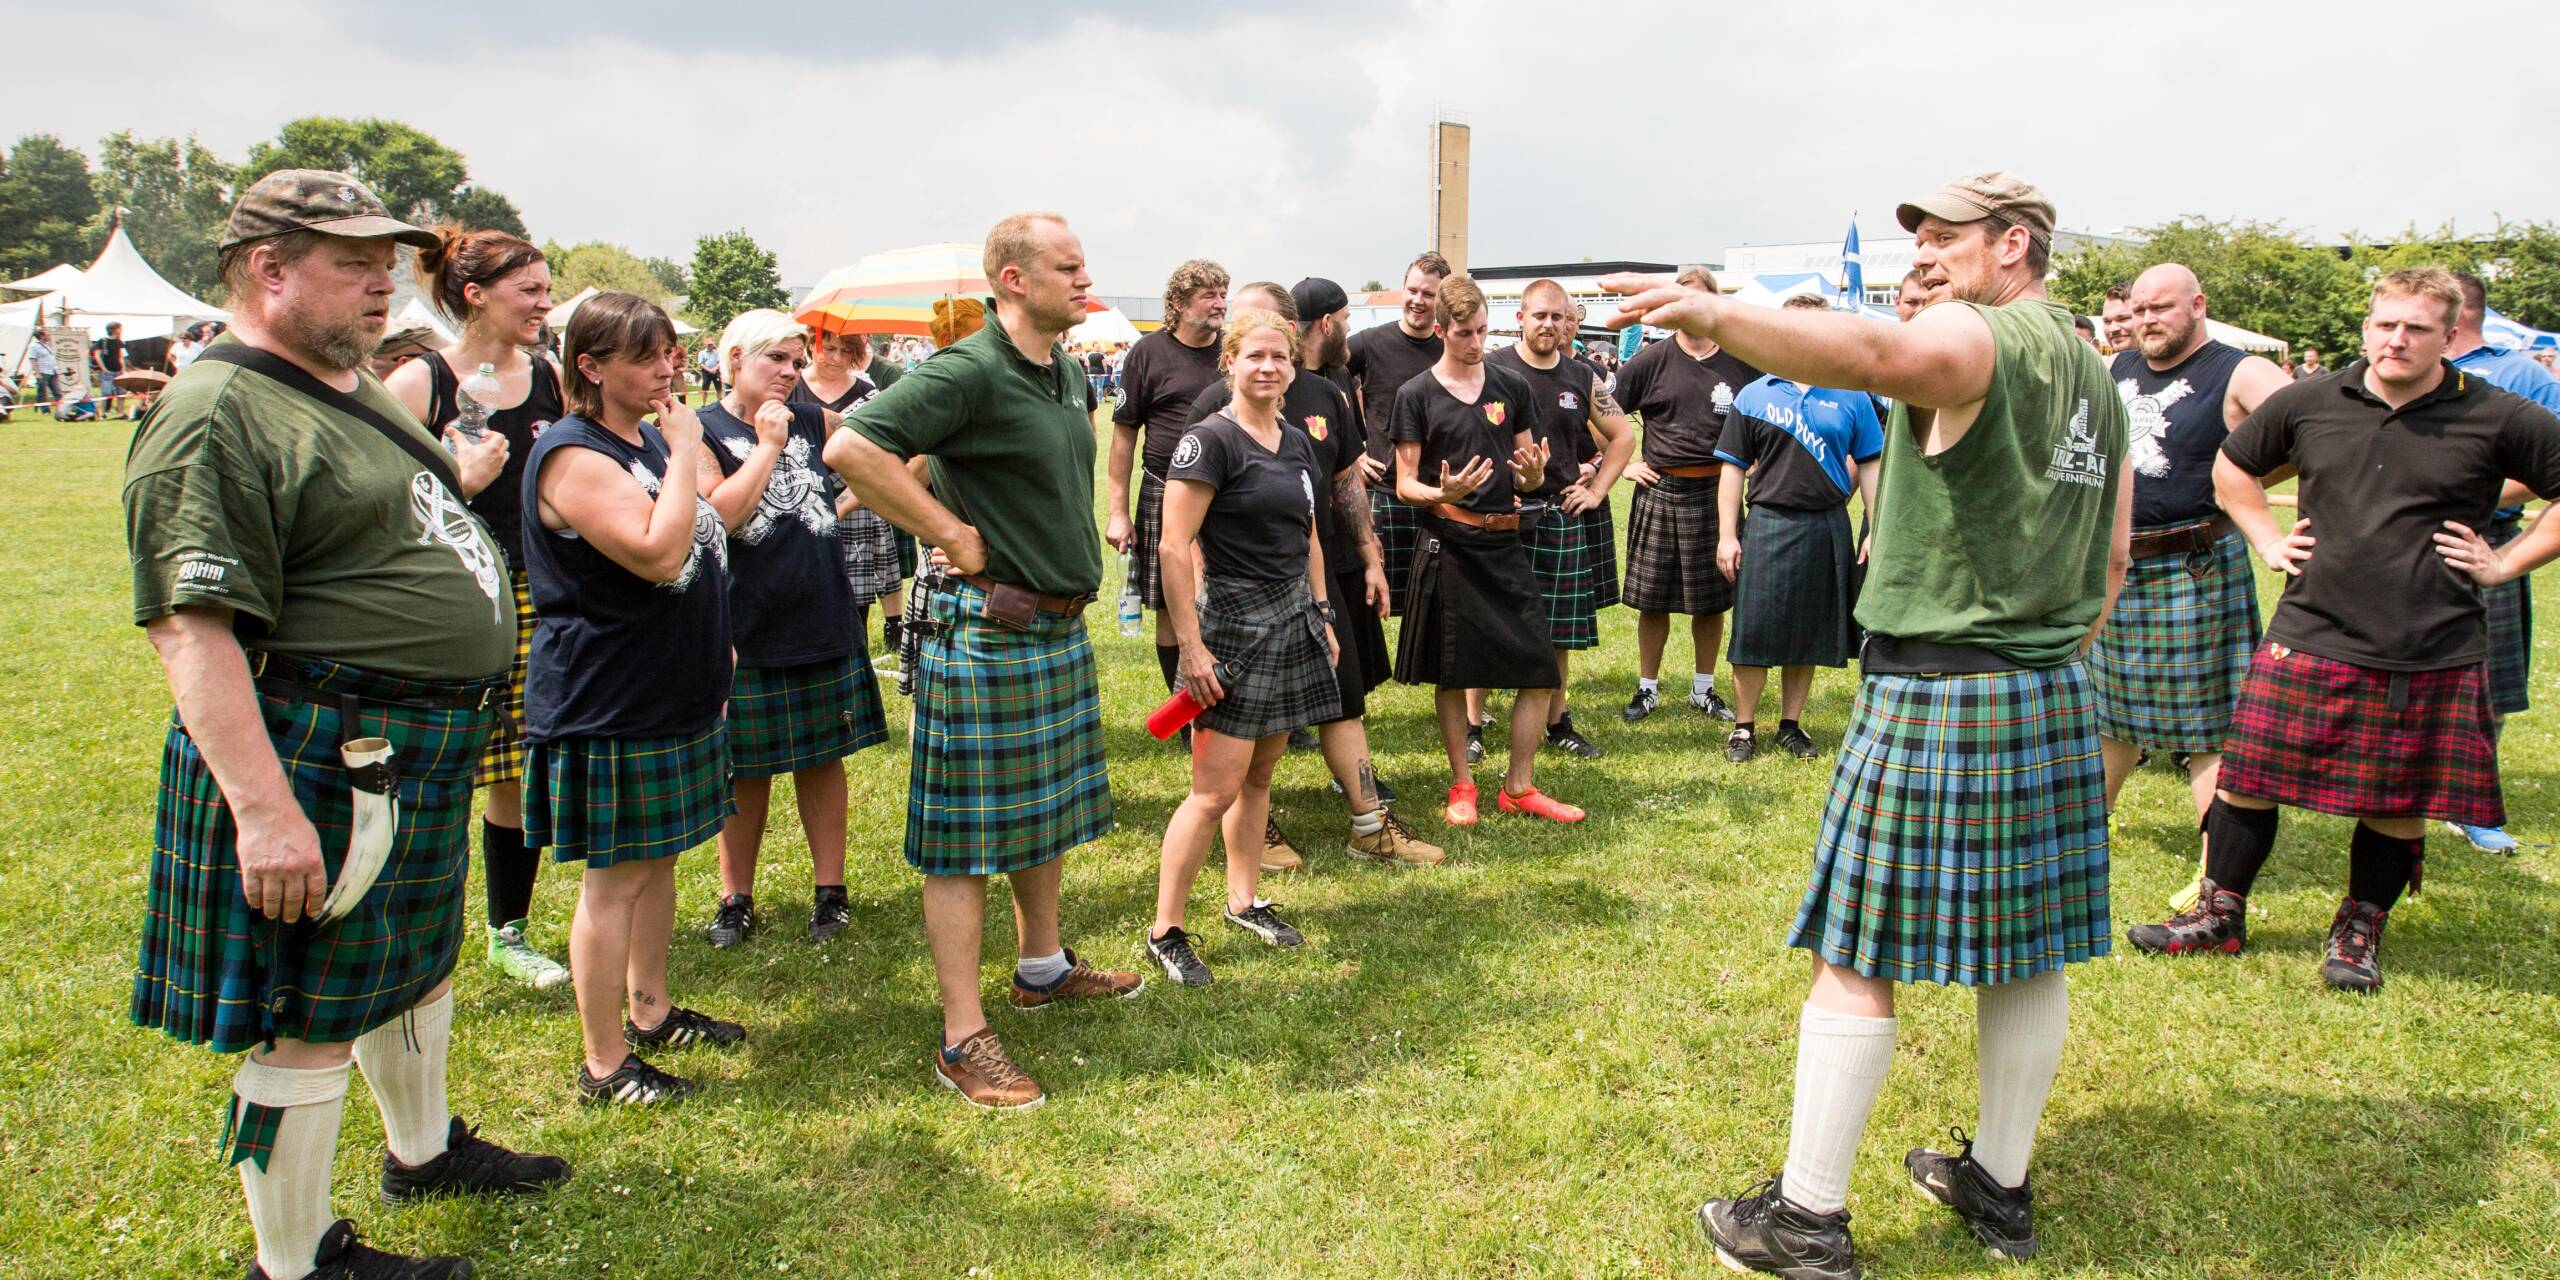 Bevor es losgeht, erhalten die Teilnehmer der Highland Games letzte Anweisungen.